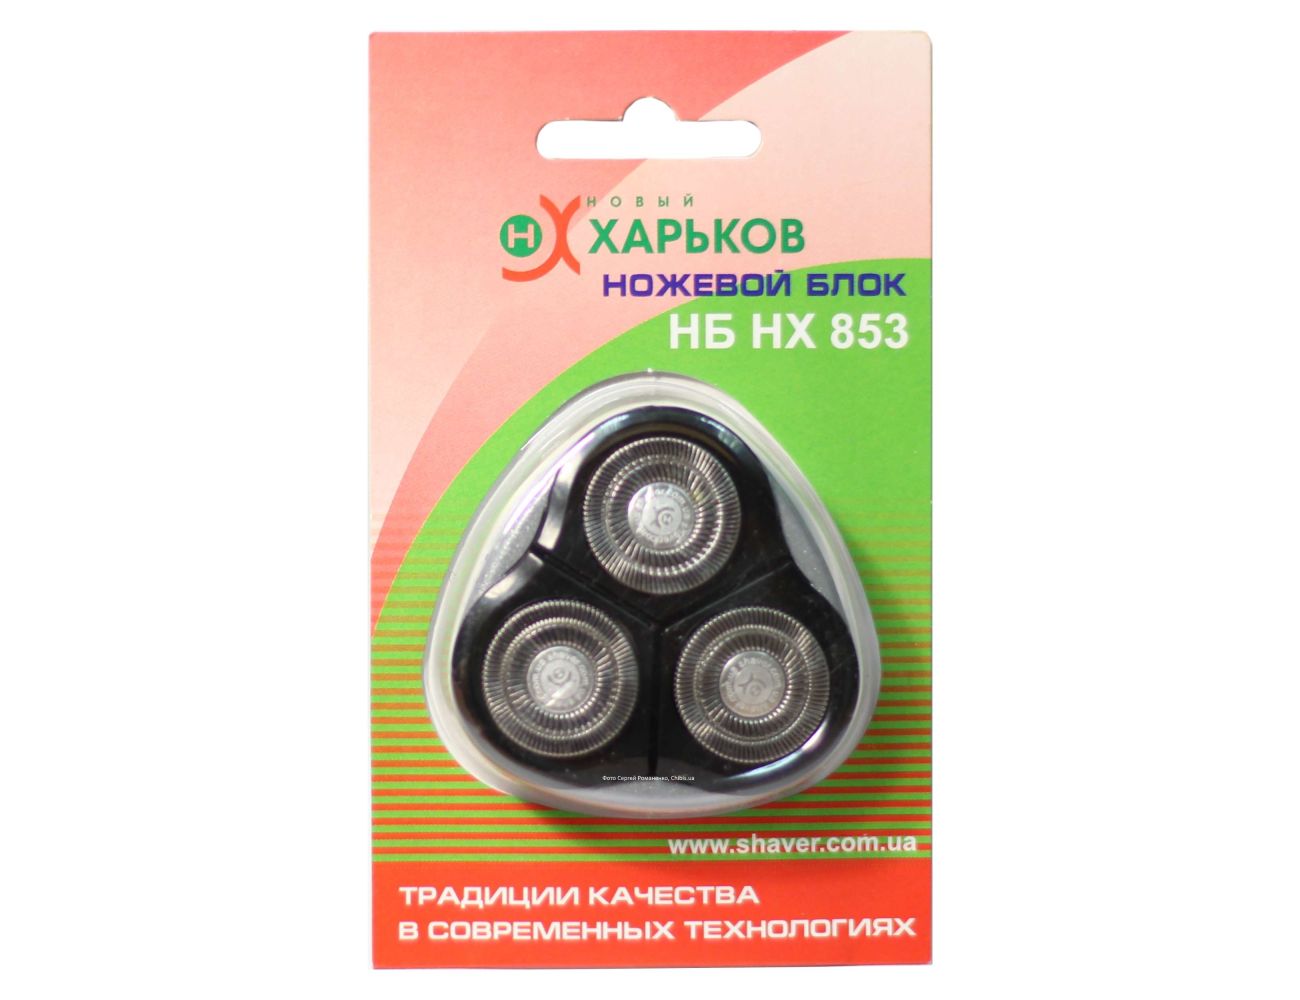 Блок Харьков 853 для бритв 8503 и 8524, серого цвета